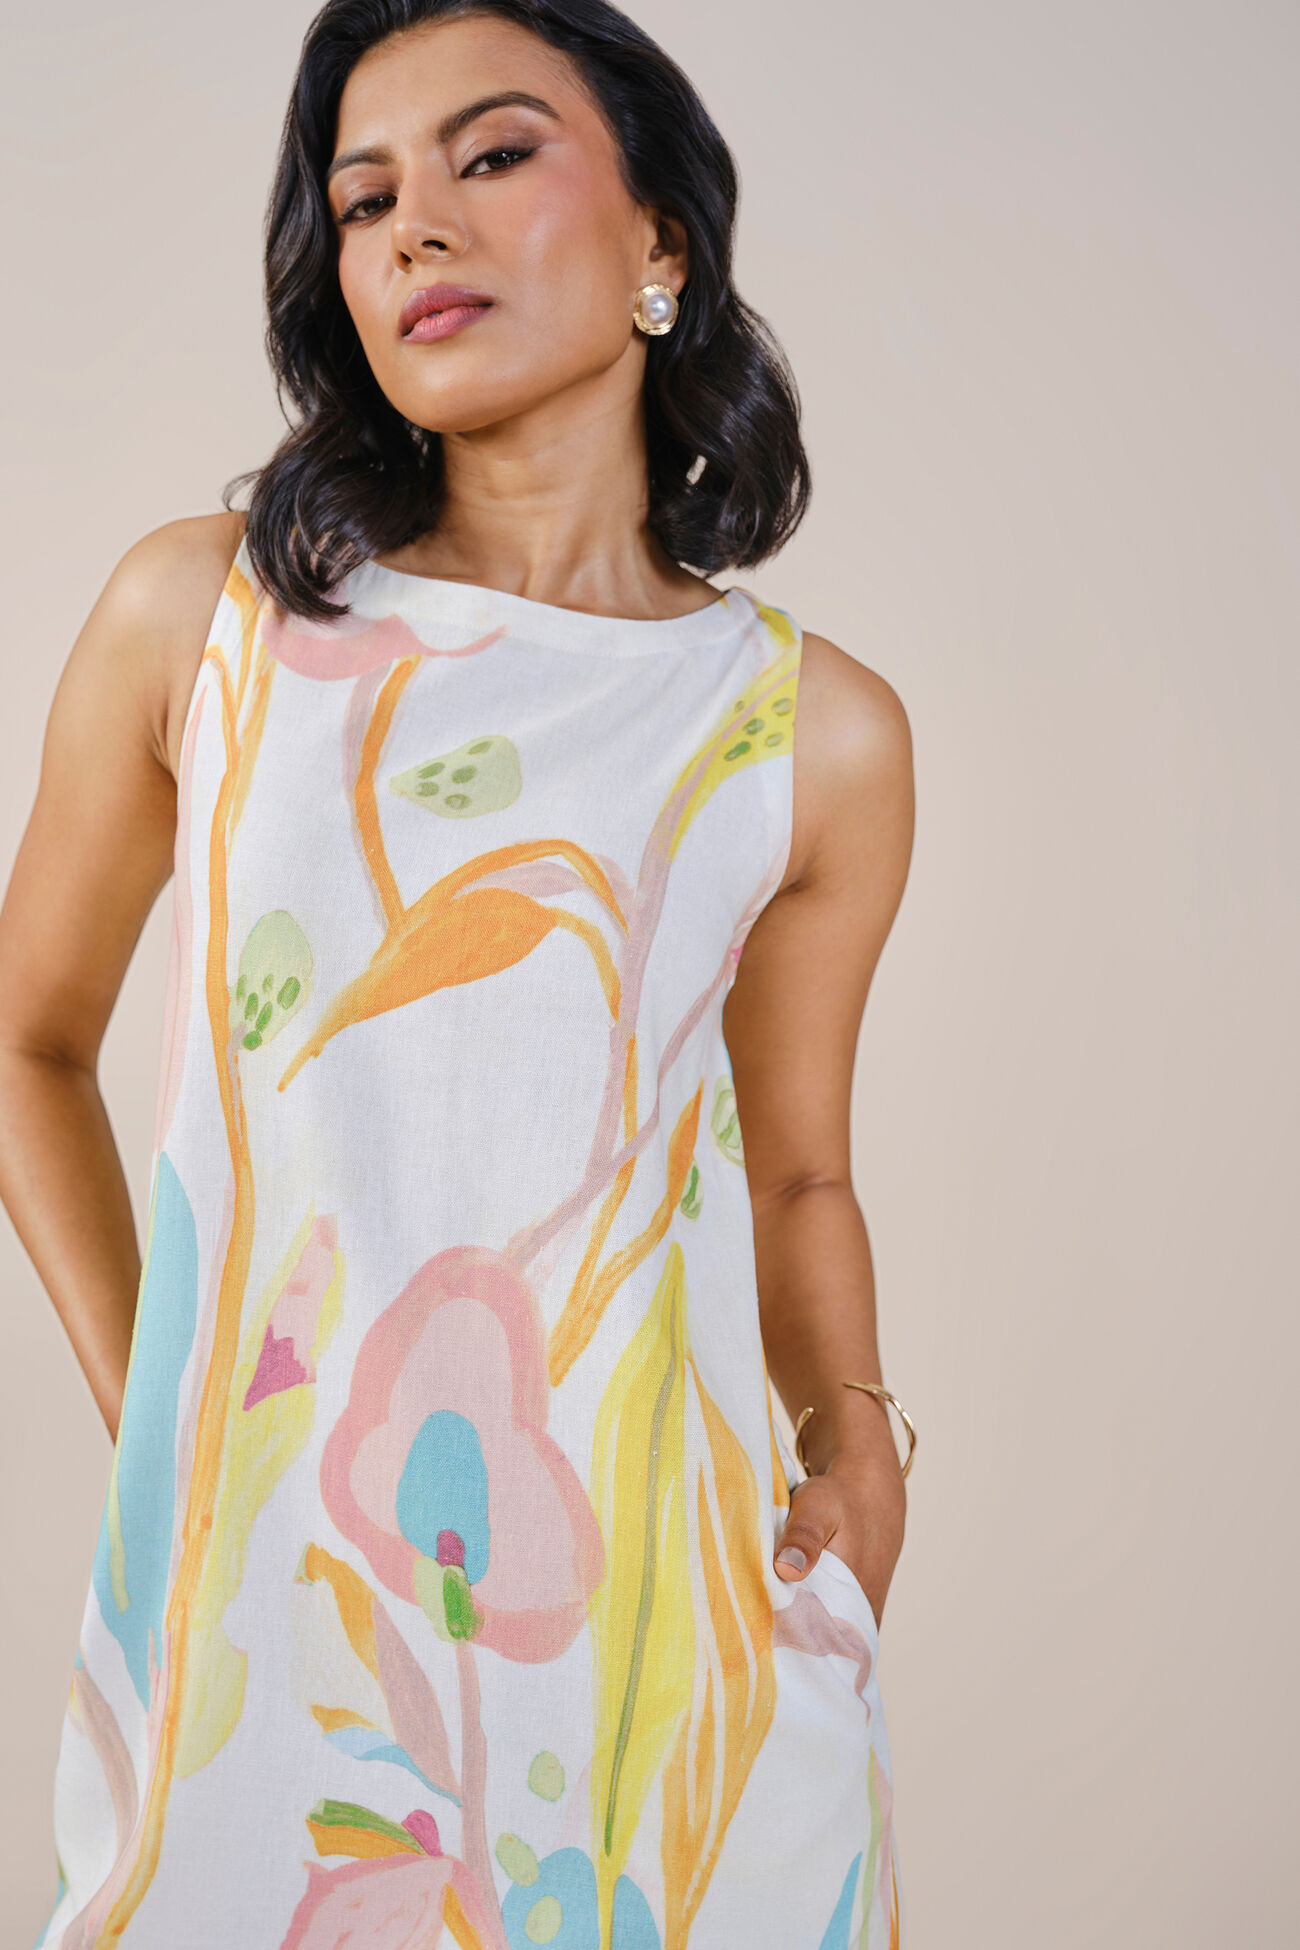 A Floral Summer Viscose Linen Blend Dress, Multi Color, image 5